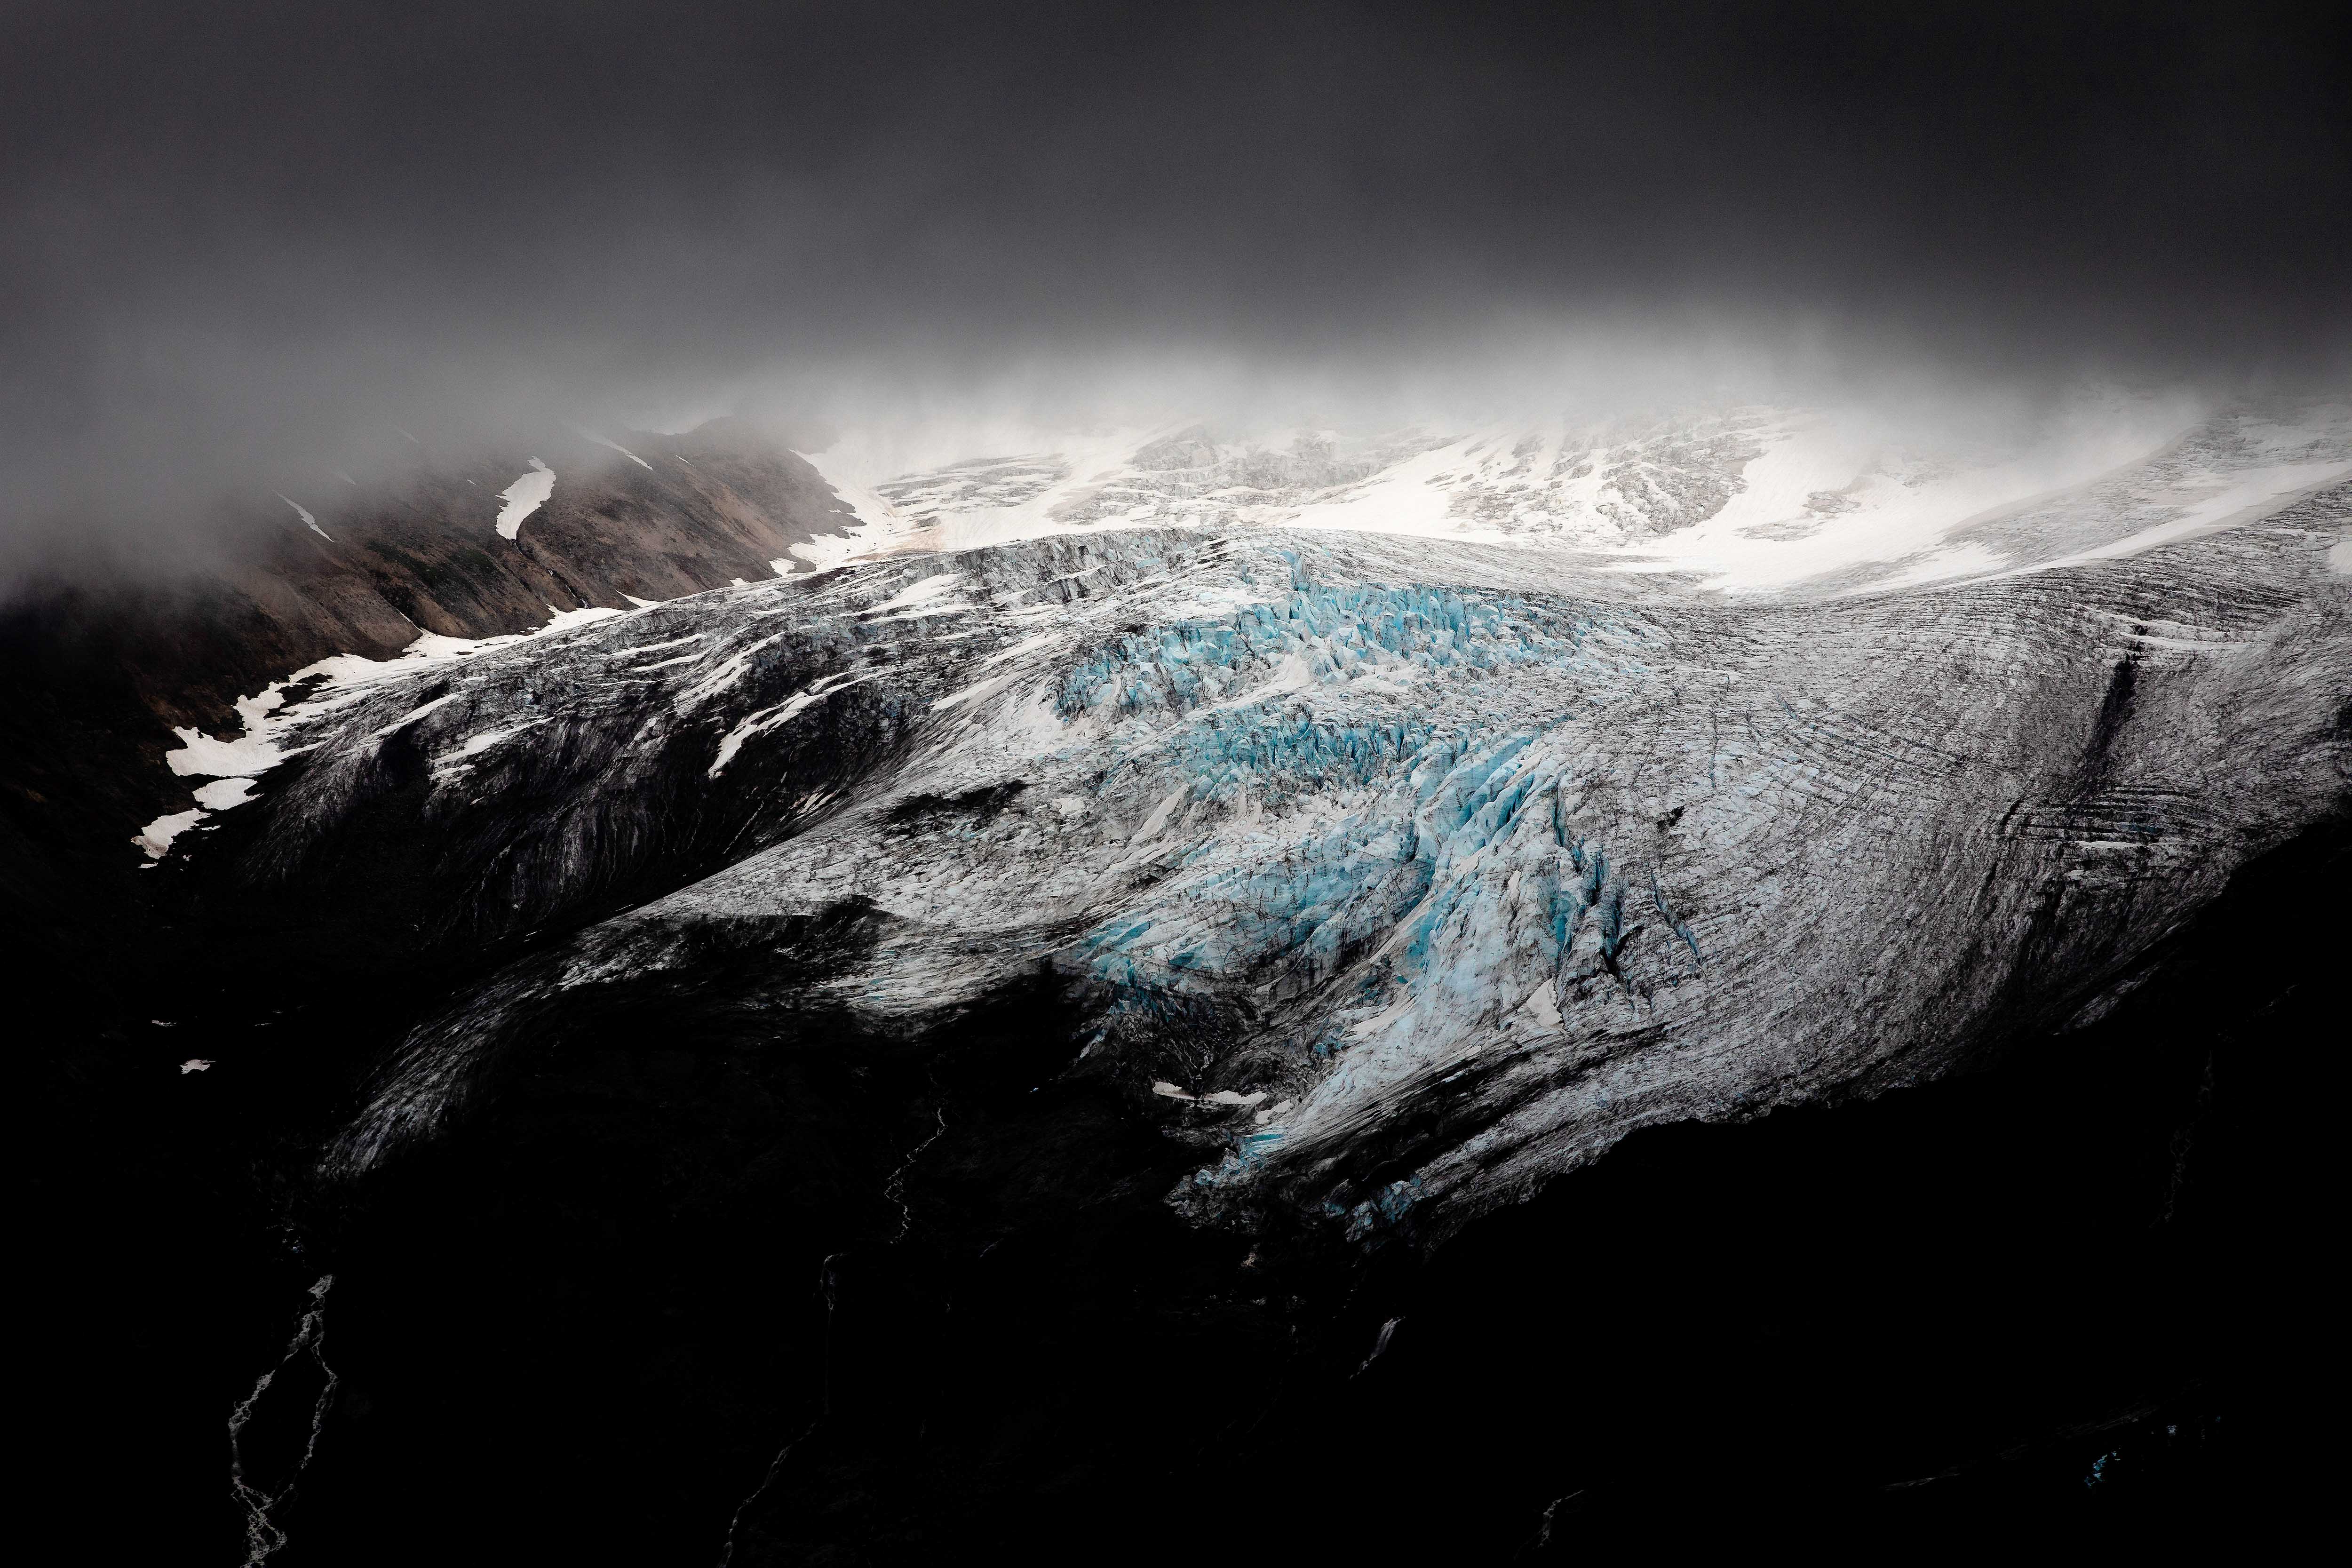 A storm approaches a glacier.